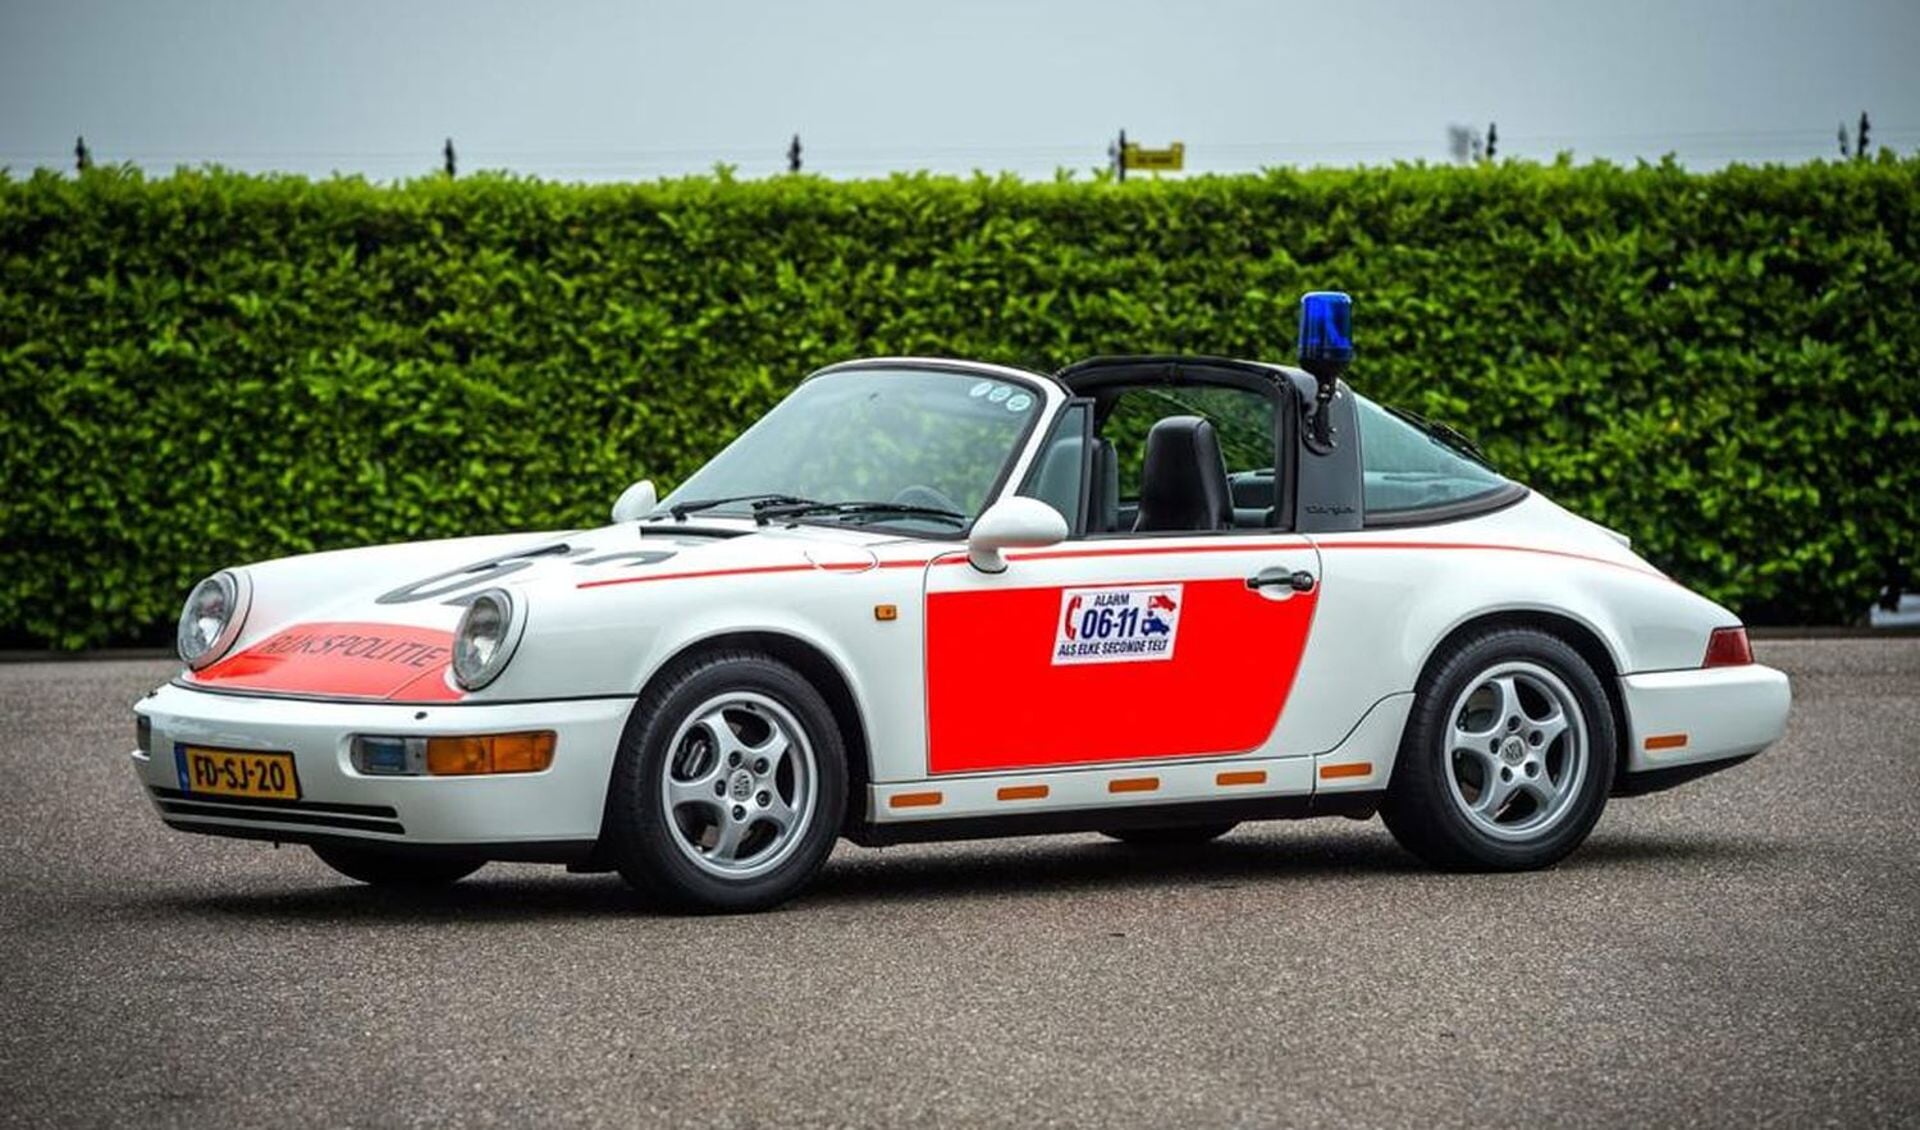 De Nederlandse politie reed vroeger in een Porsche.